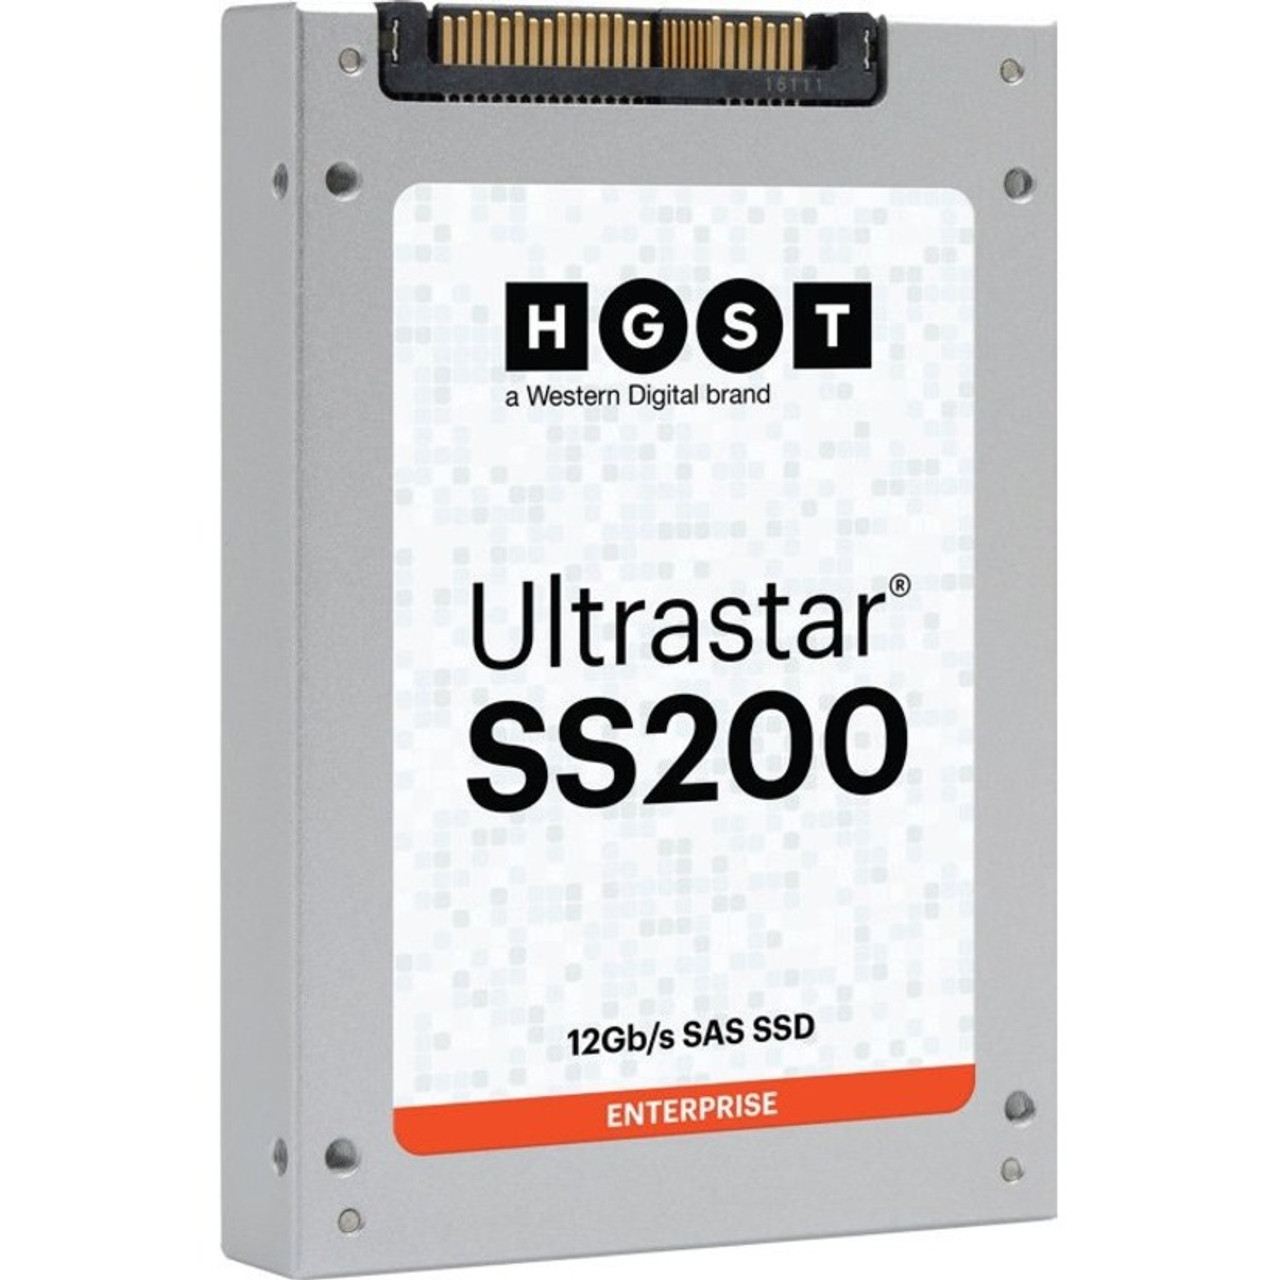 HGST Ultrastar SS200 SDLL1CLR-016T-CFA1 1.60 TB Solid State Drive